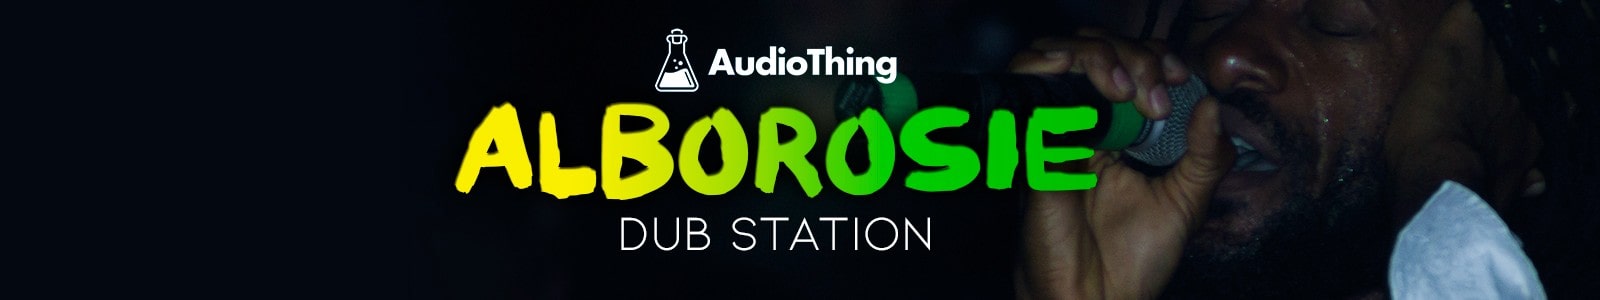 Alborosie Dub Station by AudioThing